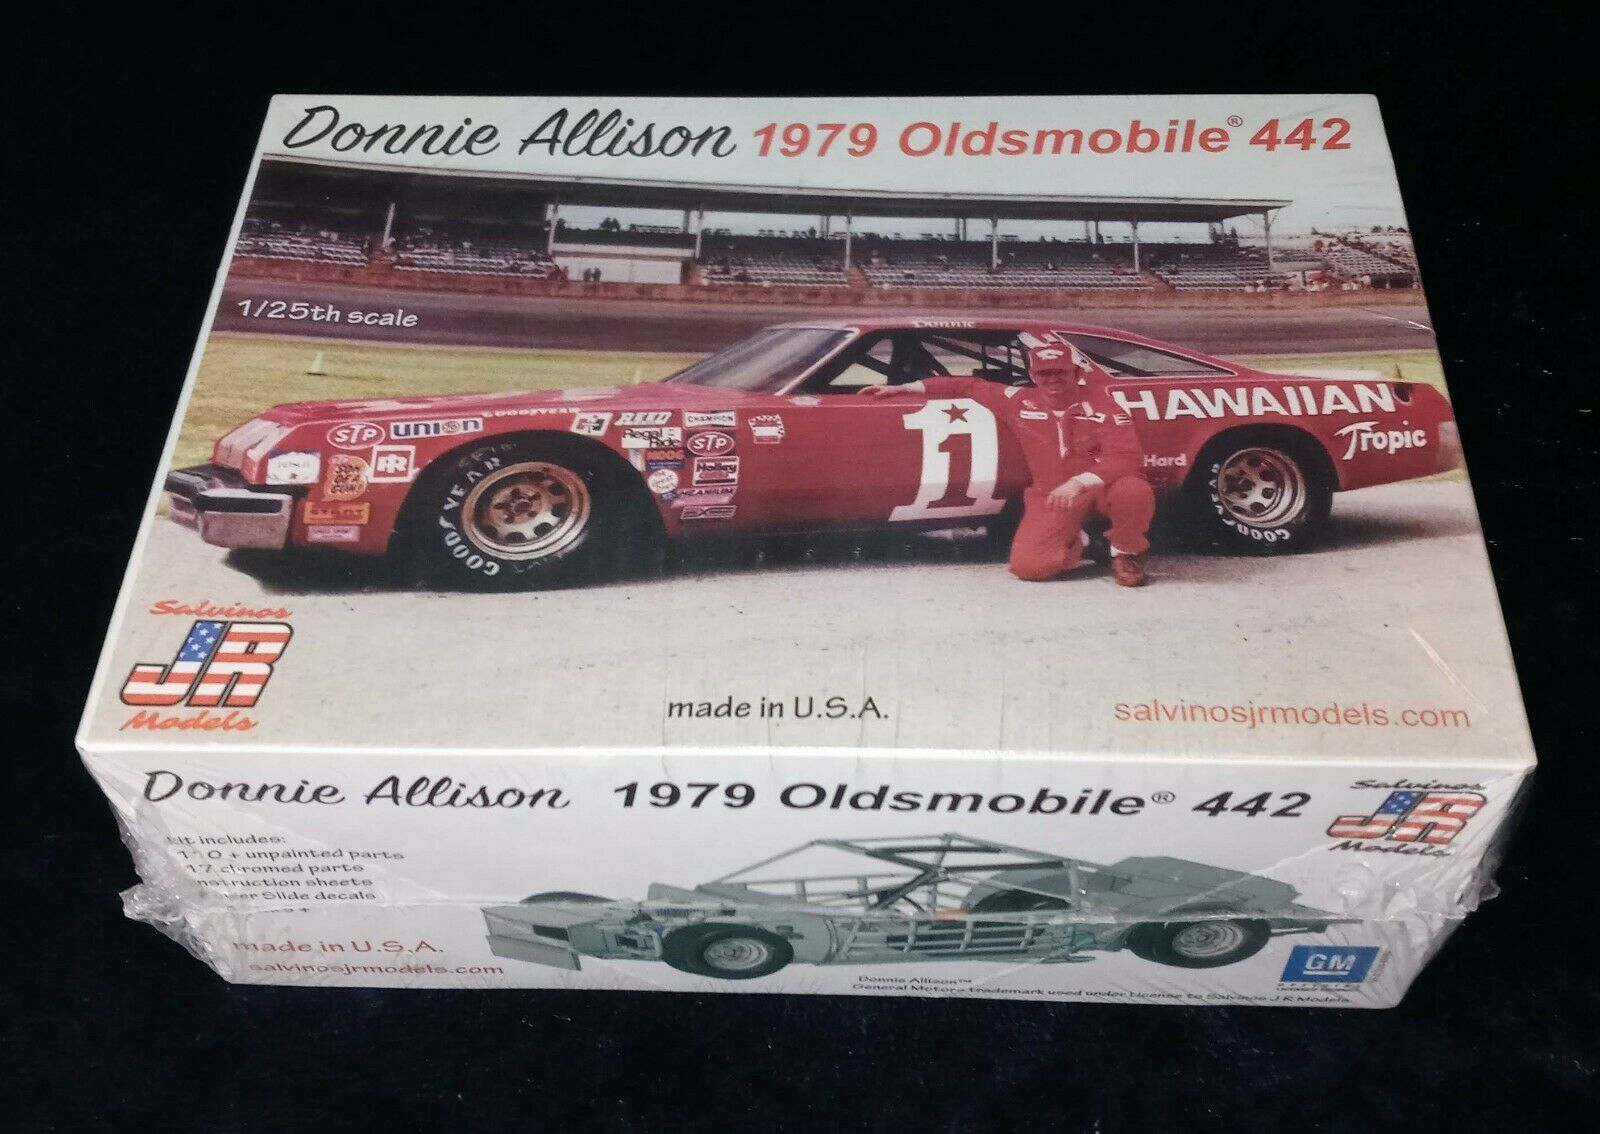 Donnie Allison 1979 Oldsmobile 442 Salvinos Jr Models 1/25 Scale Nib! Sealed!